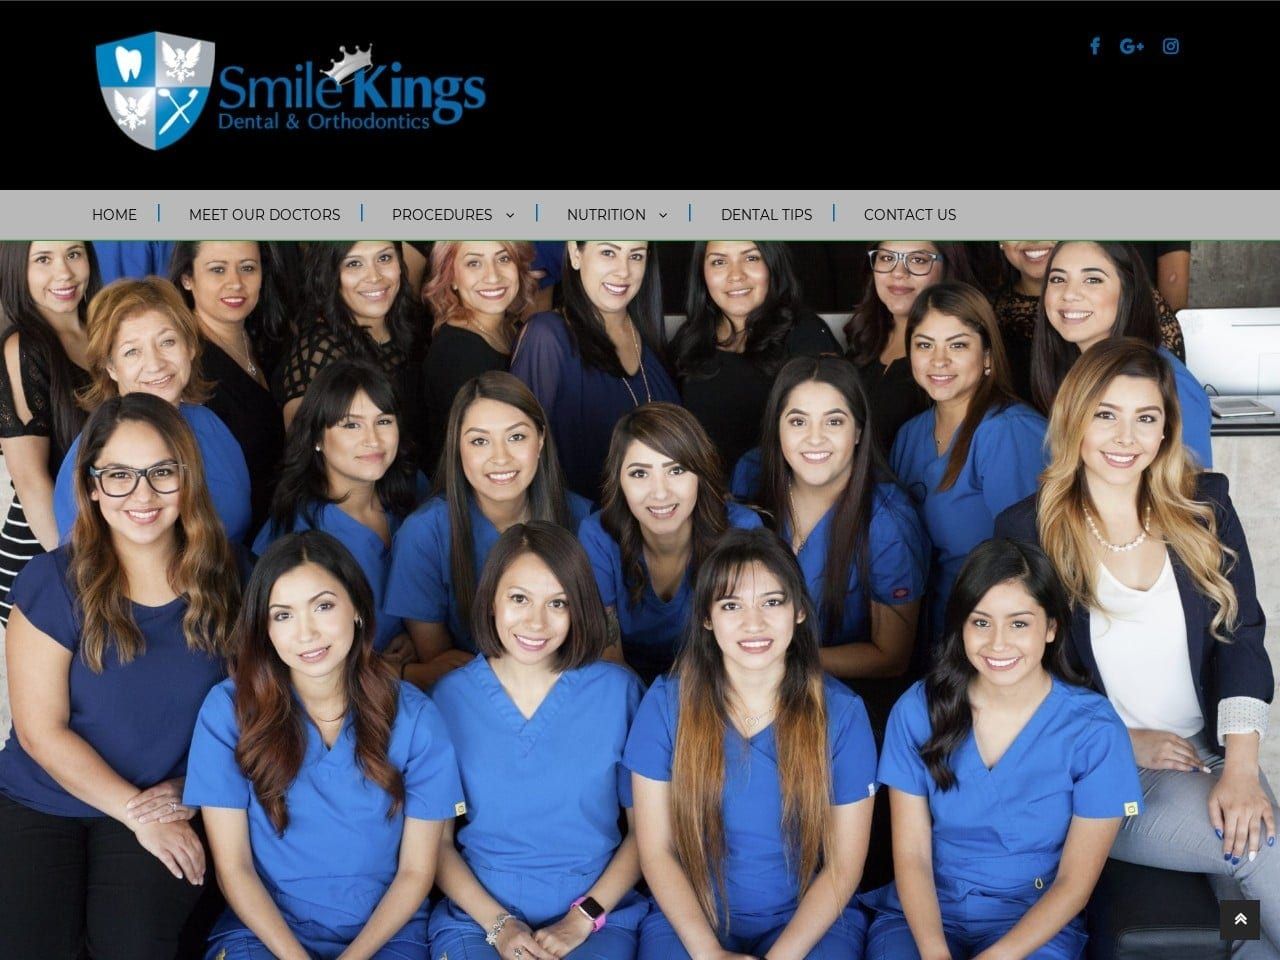 Smile Kings Dental Dentist Website Screenshot from smilekings.com